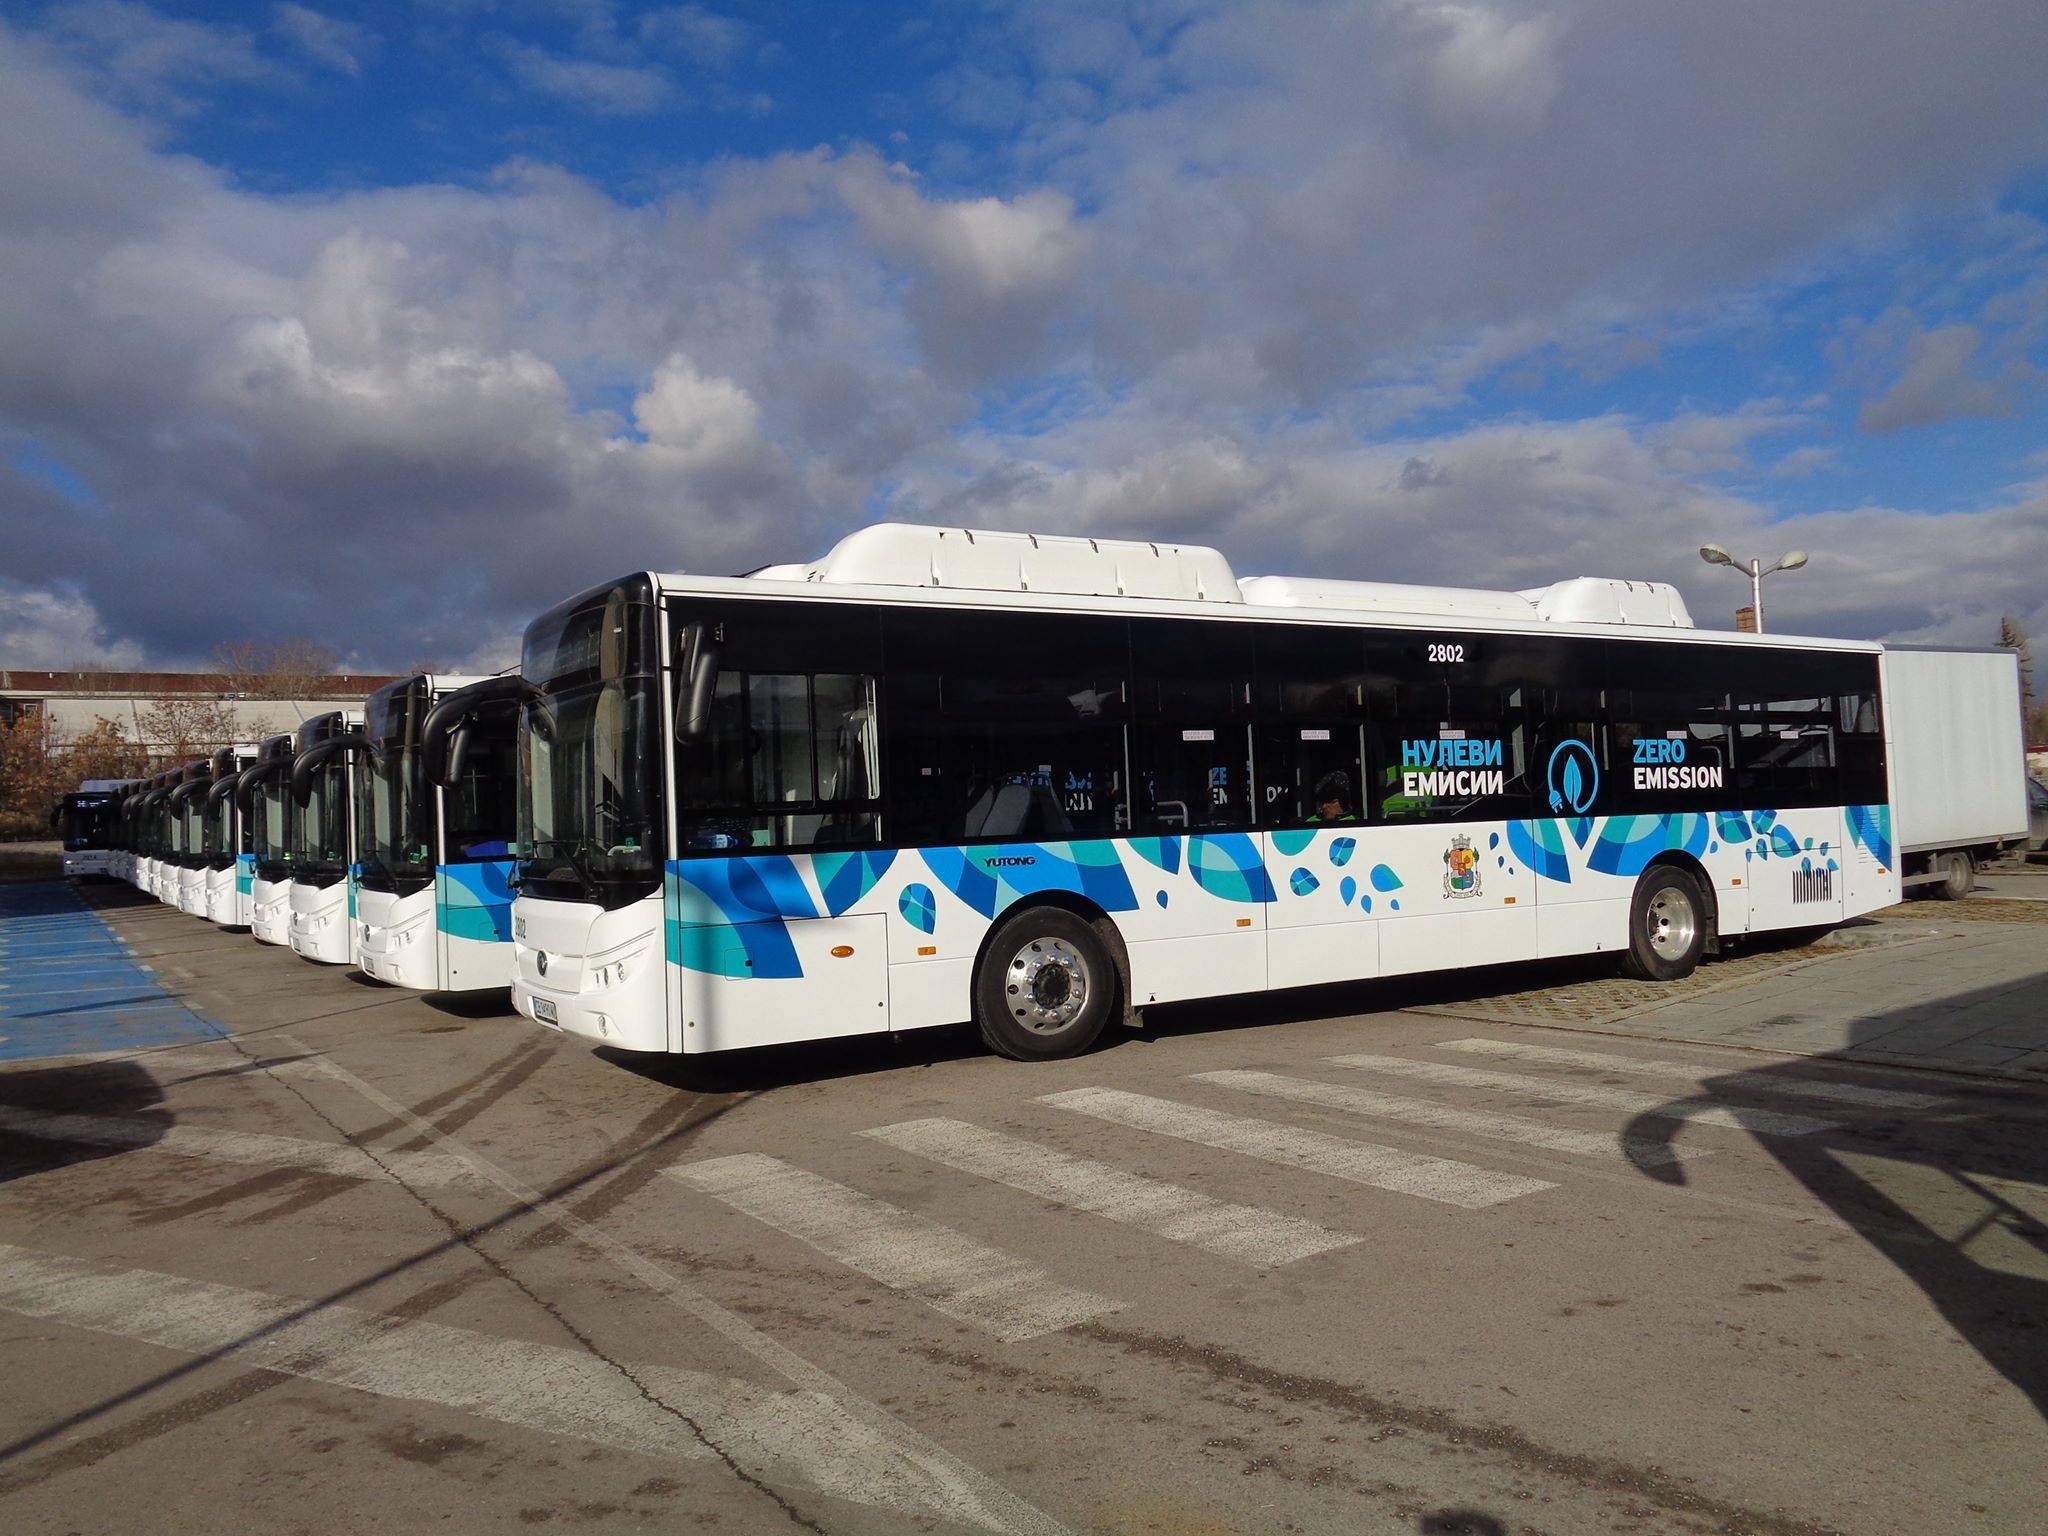 22 нови електробуса влизат в експлоатация в София. Те са